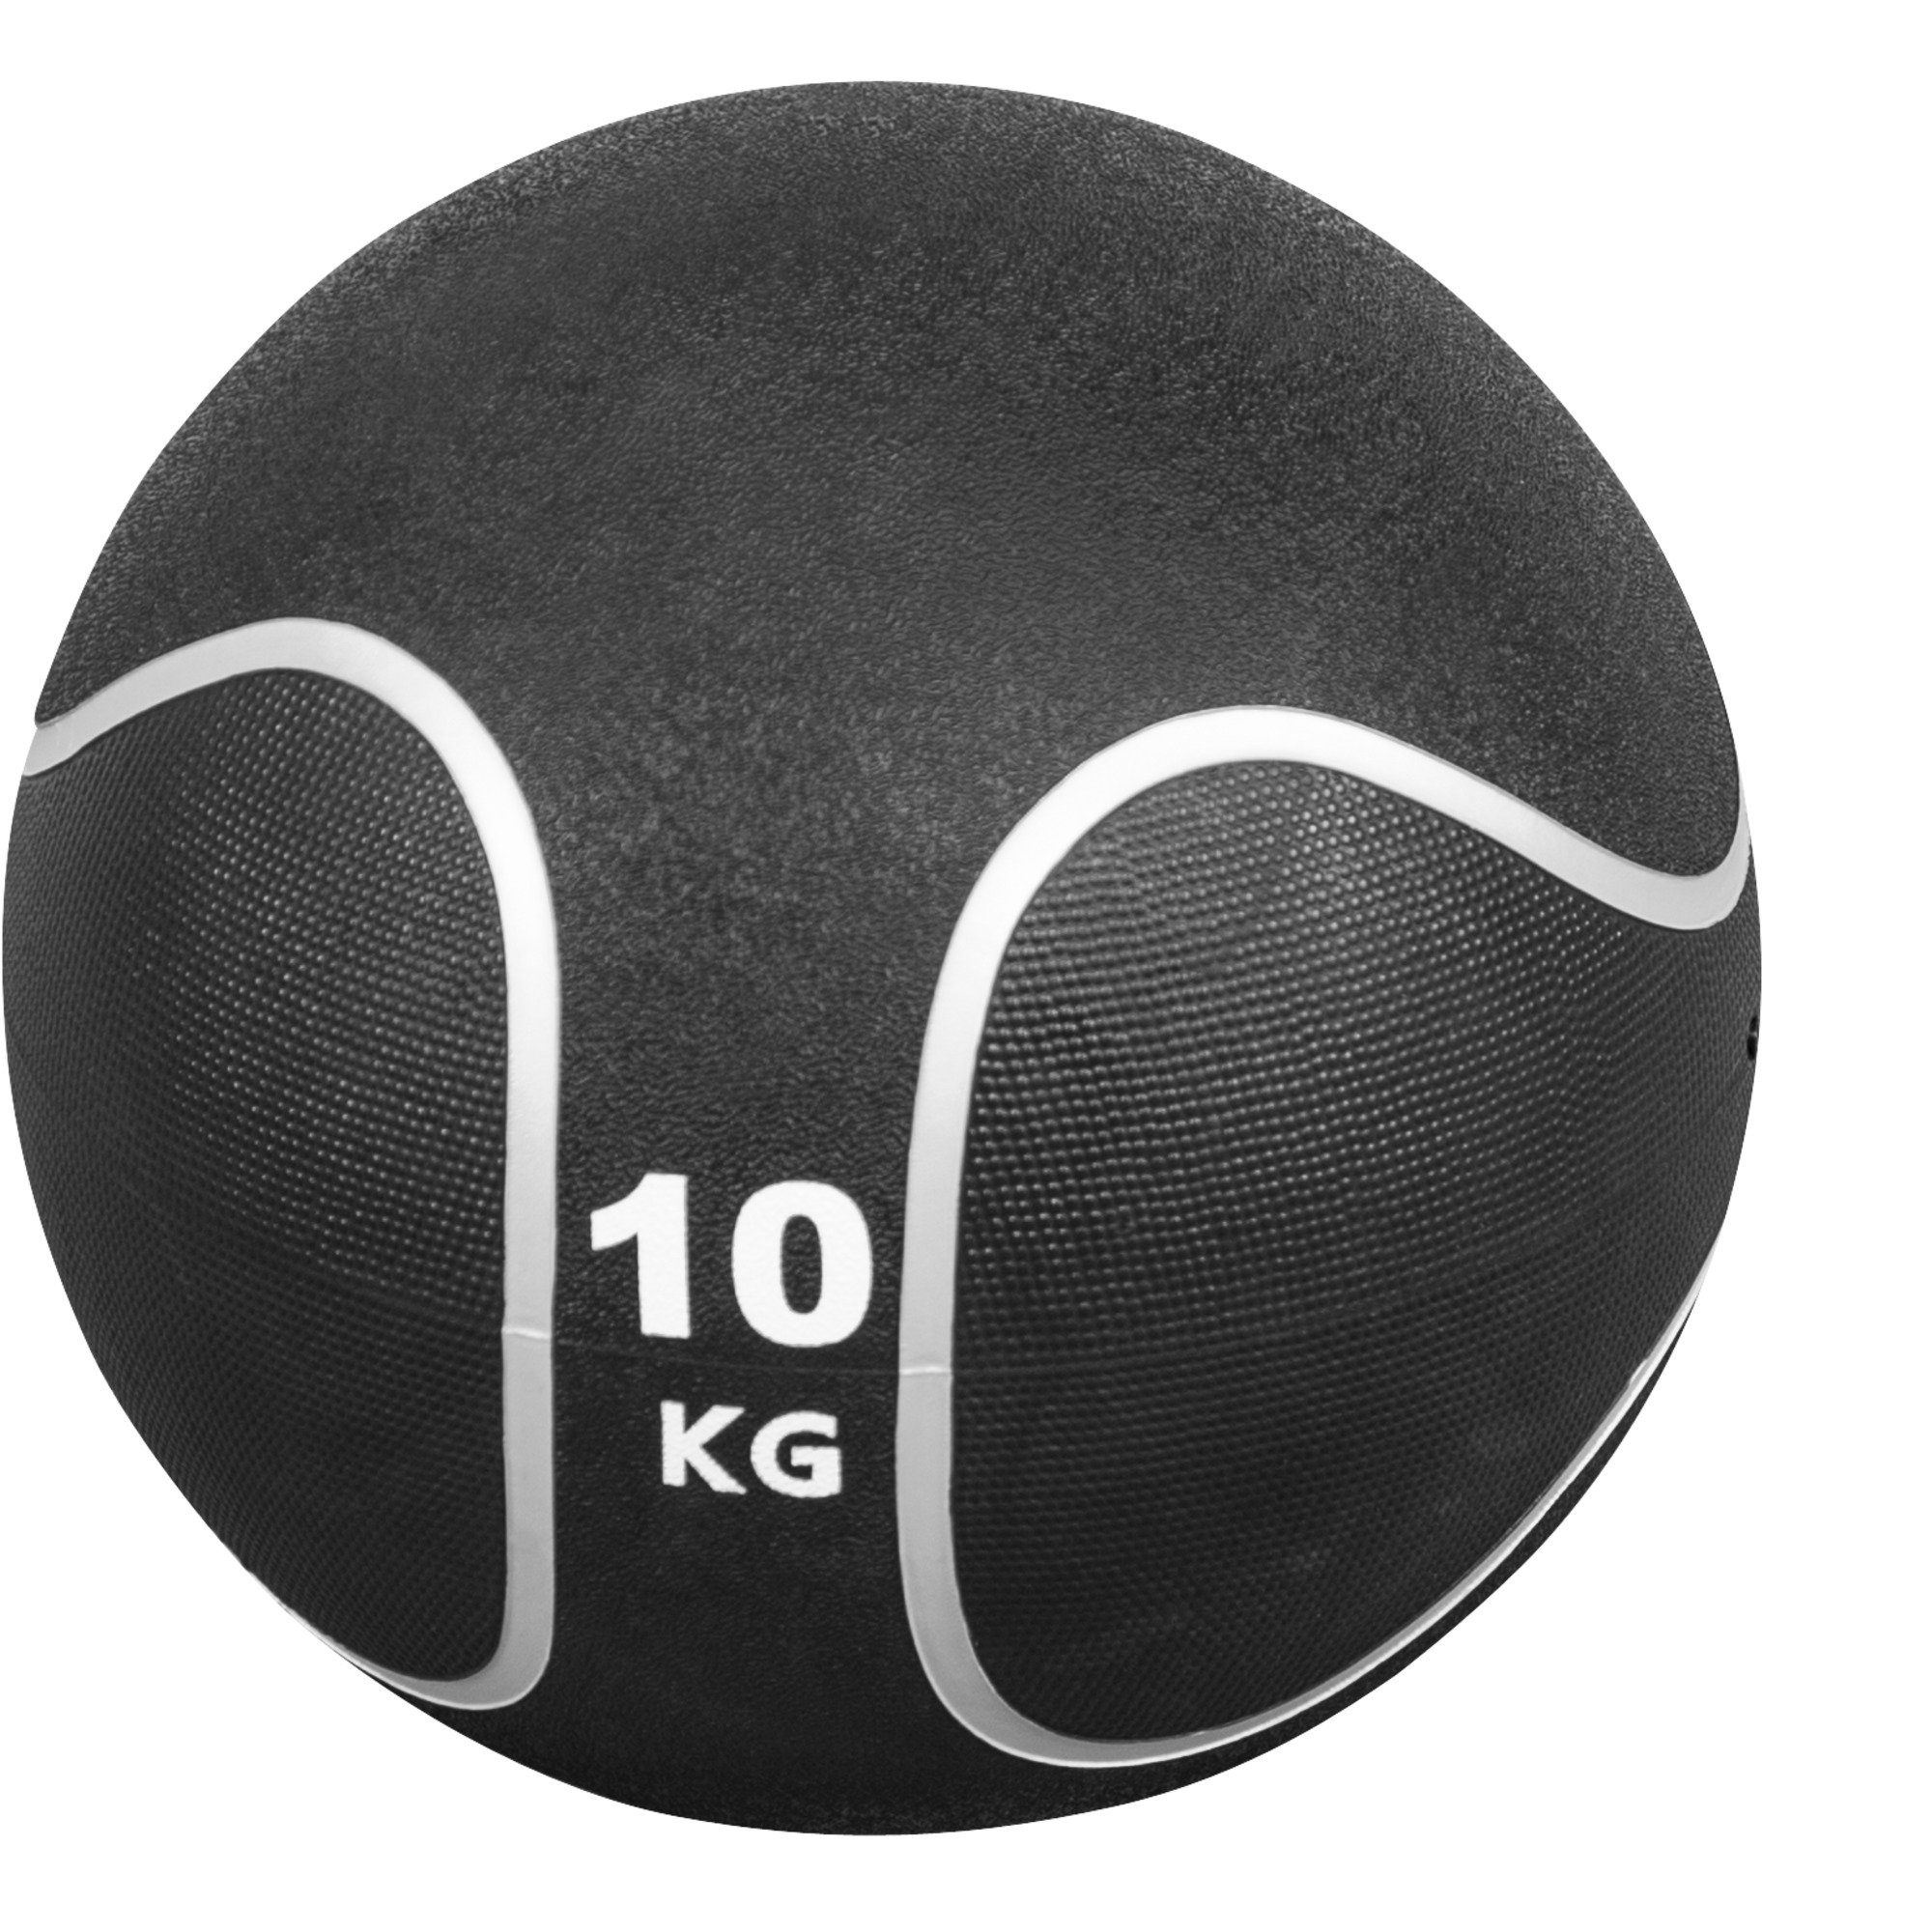 GORILLA SPORTS Medizinball Einzeln / Set, Ø 23 oder 29 cm, rutschfest, aus Gummi, Fitnessball 10 KG